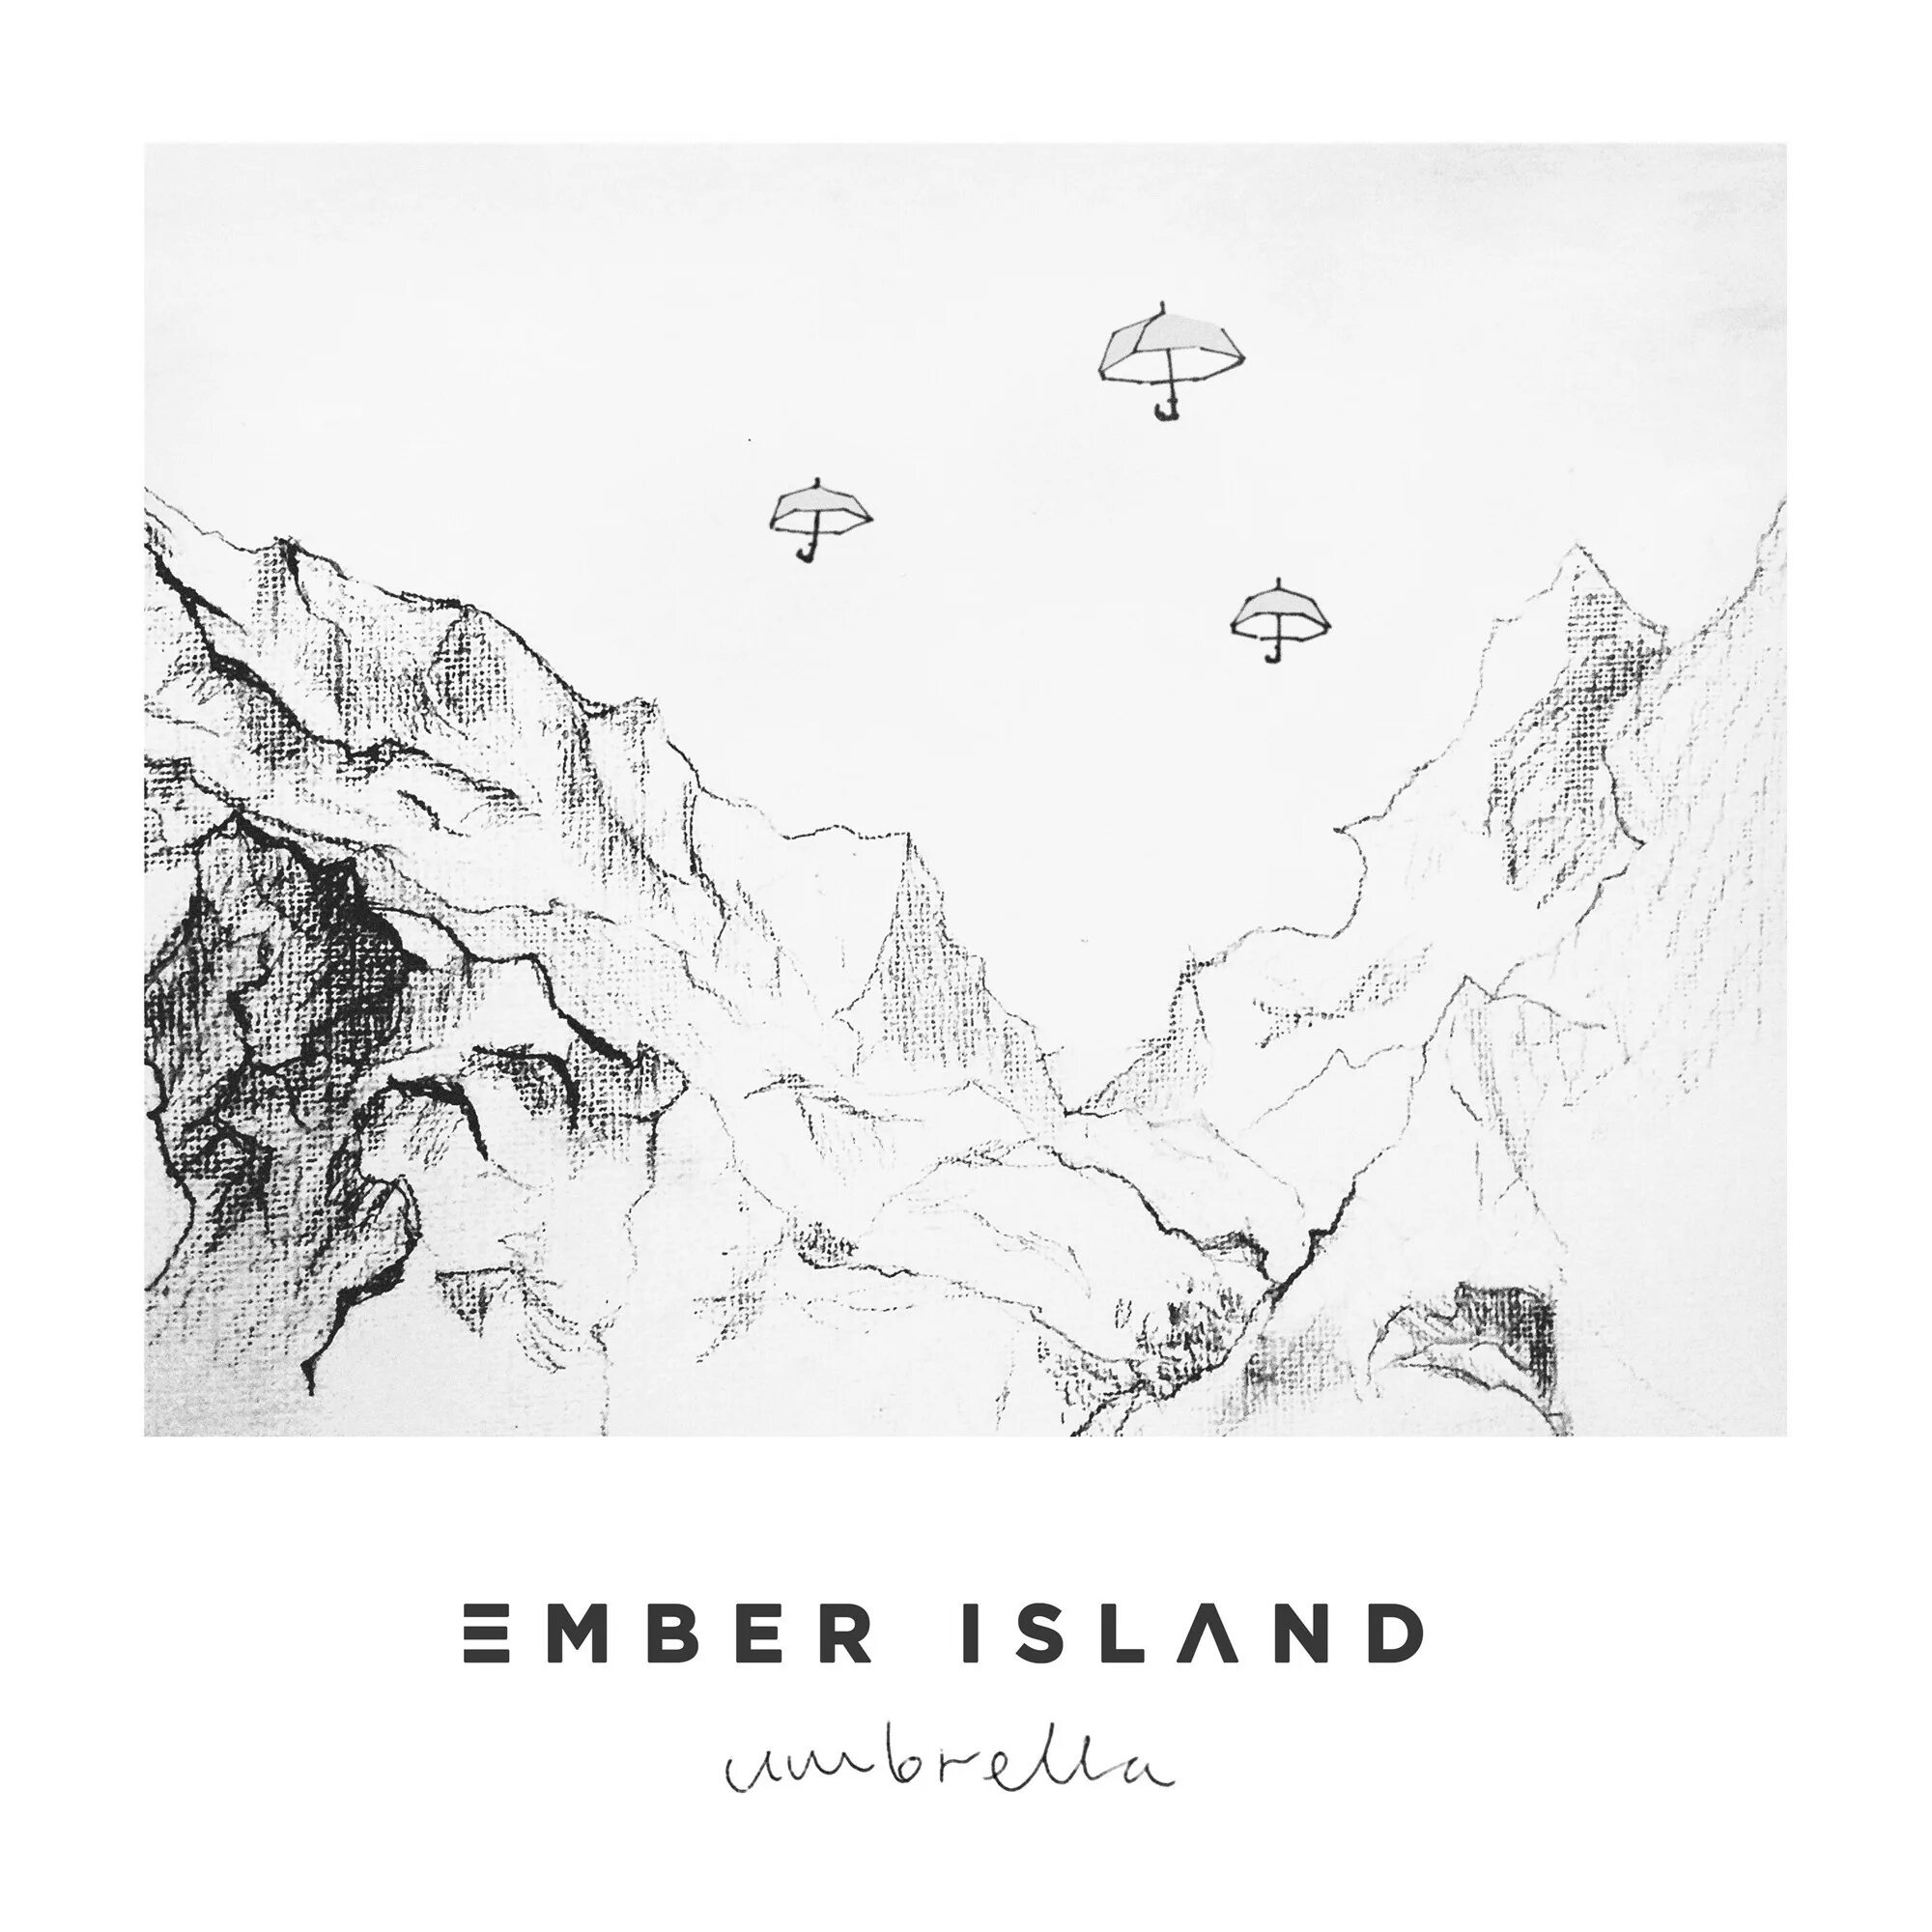 Umbrella ember Island. Песня Umbrella ember Island. Ember Island Umbrella Fon. Ember Island Umbrella Slowed+Remix. Ember island